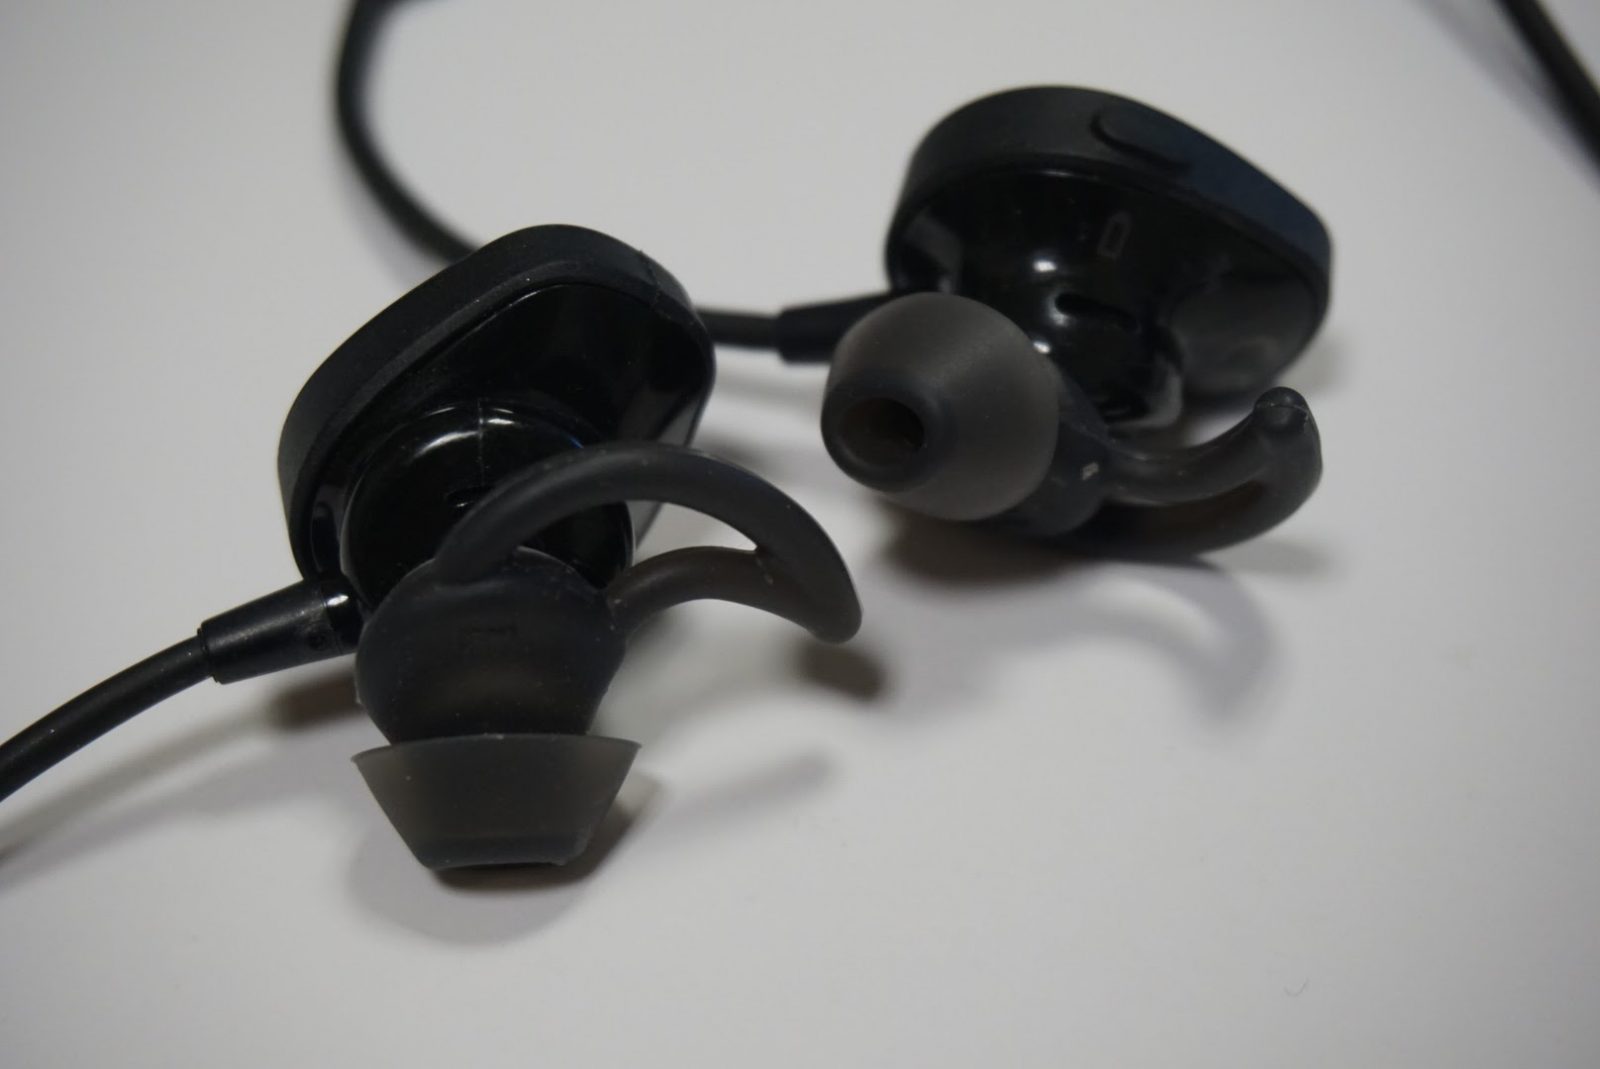 SoundSport® wireless headphones